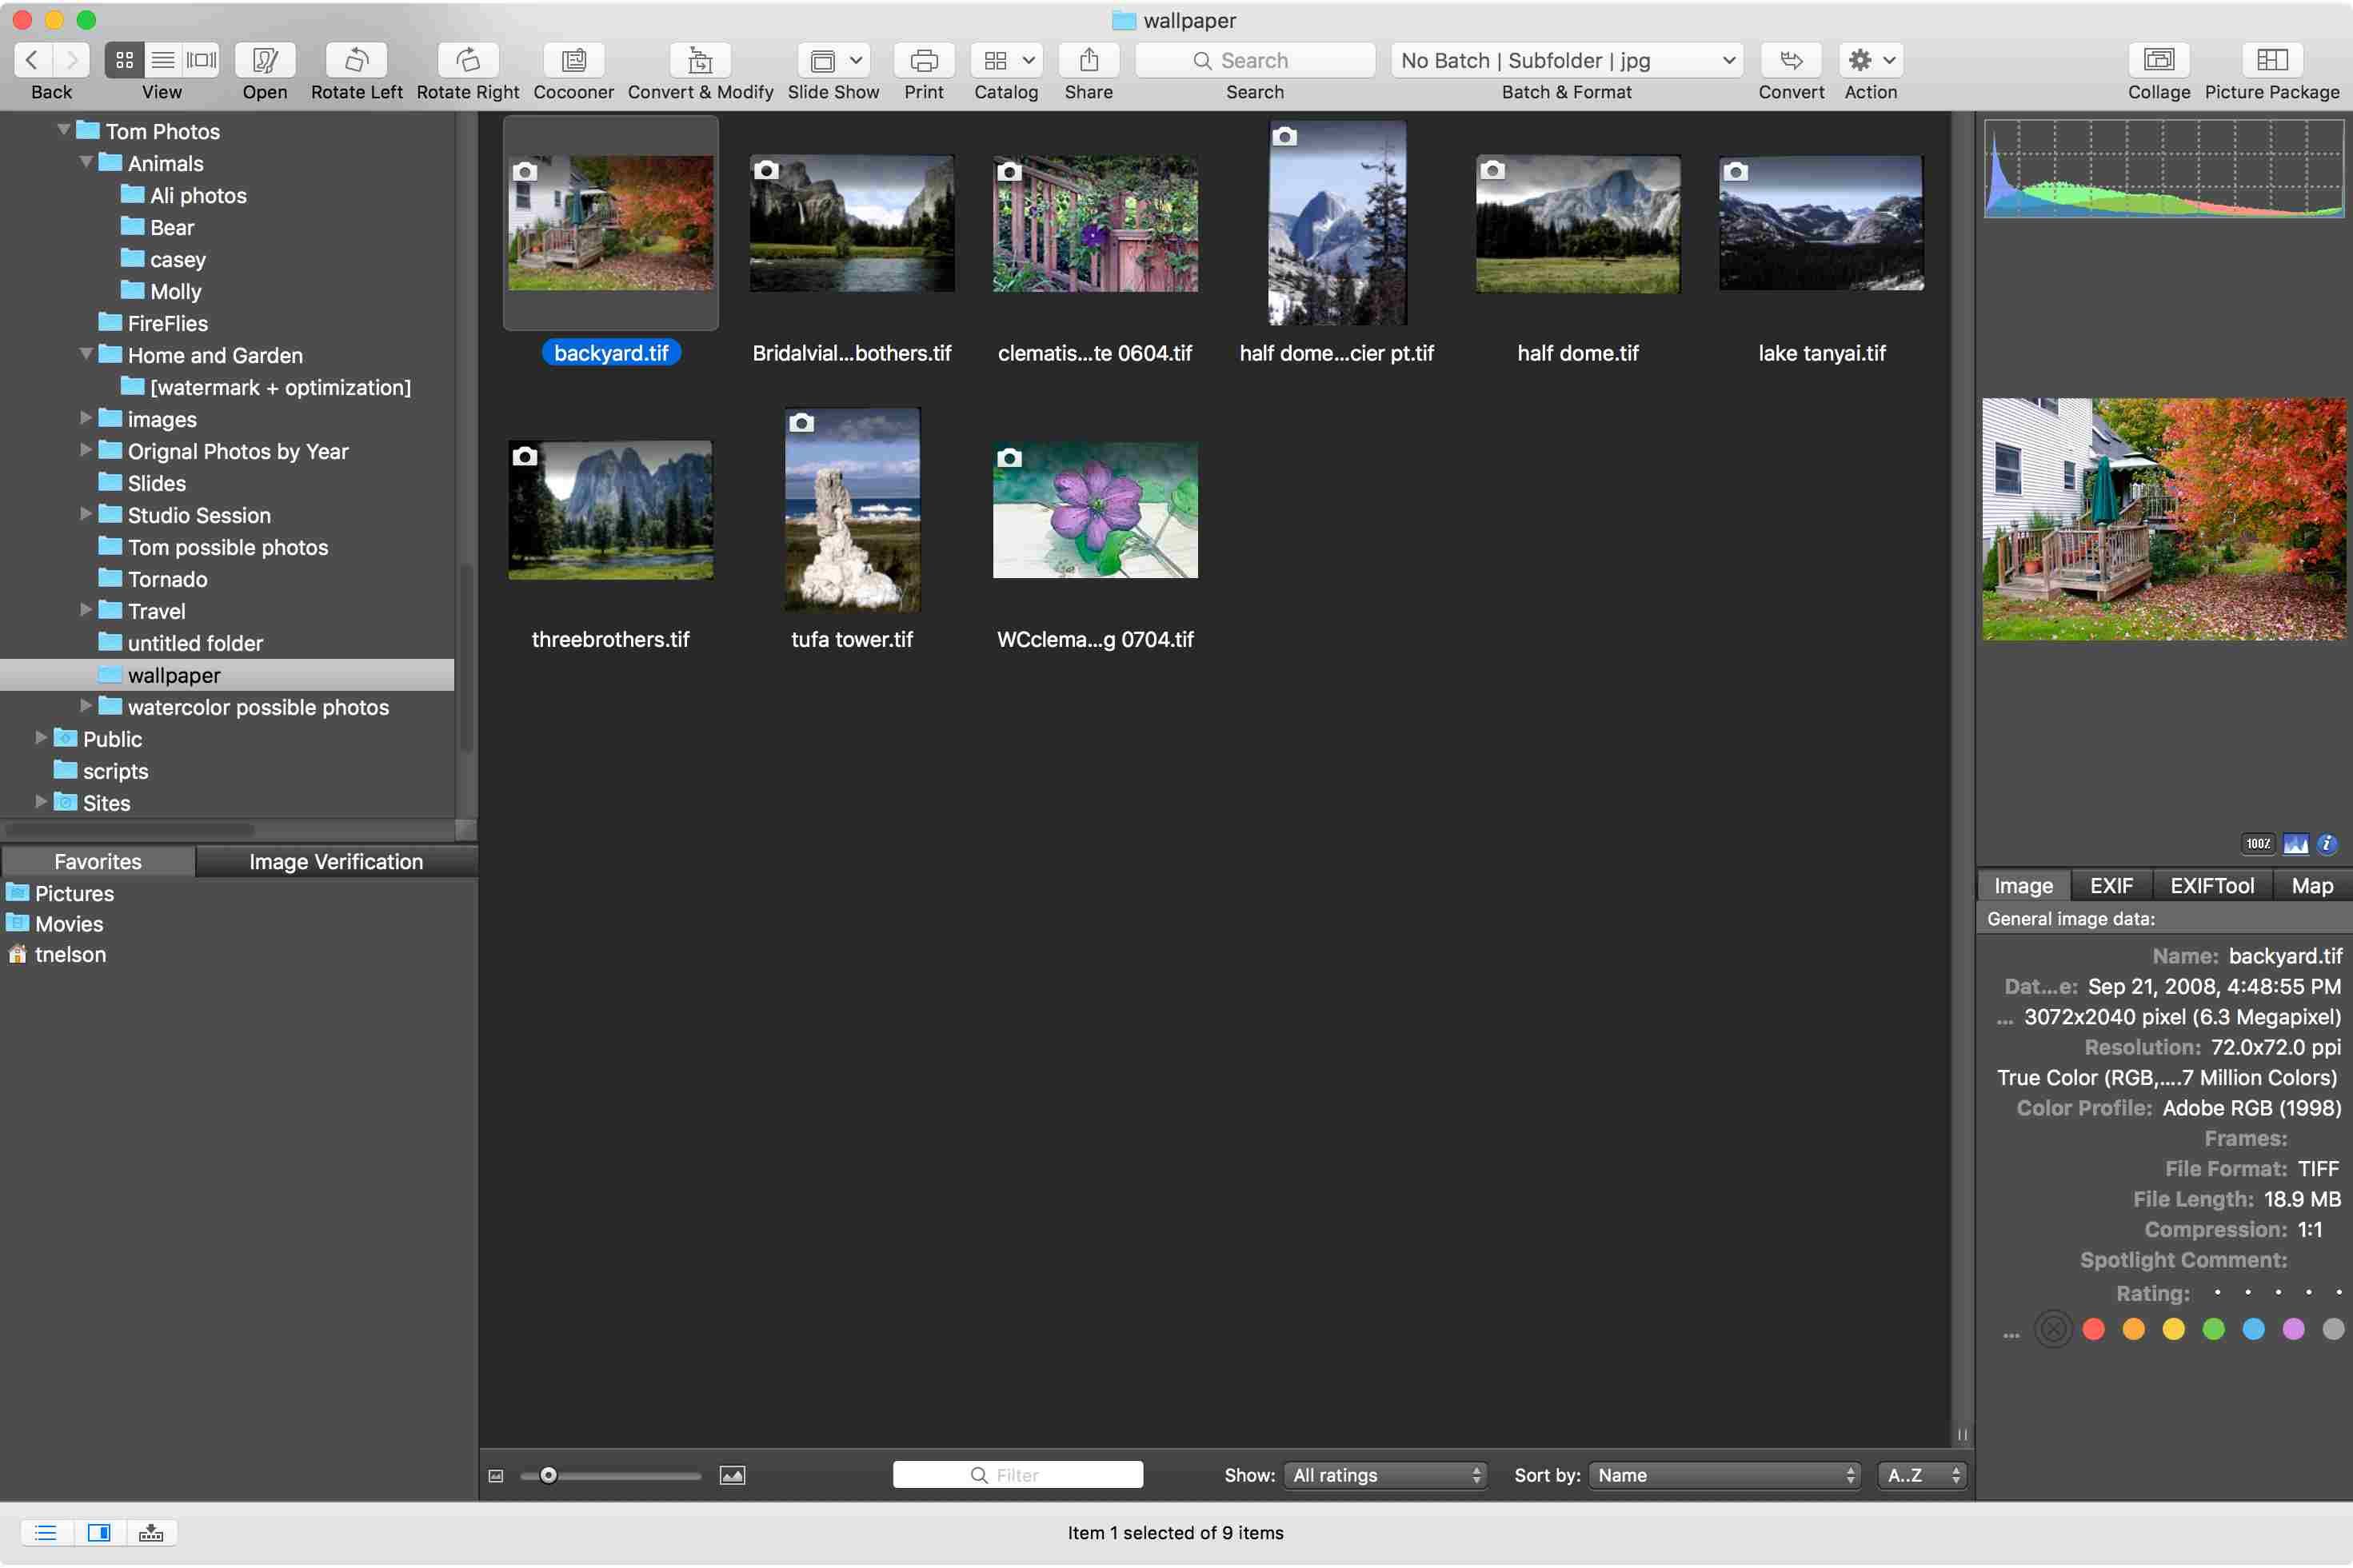 GraphicConverter 10 браузер изображений